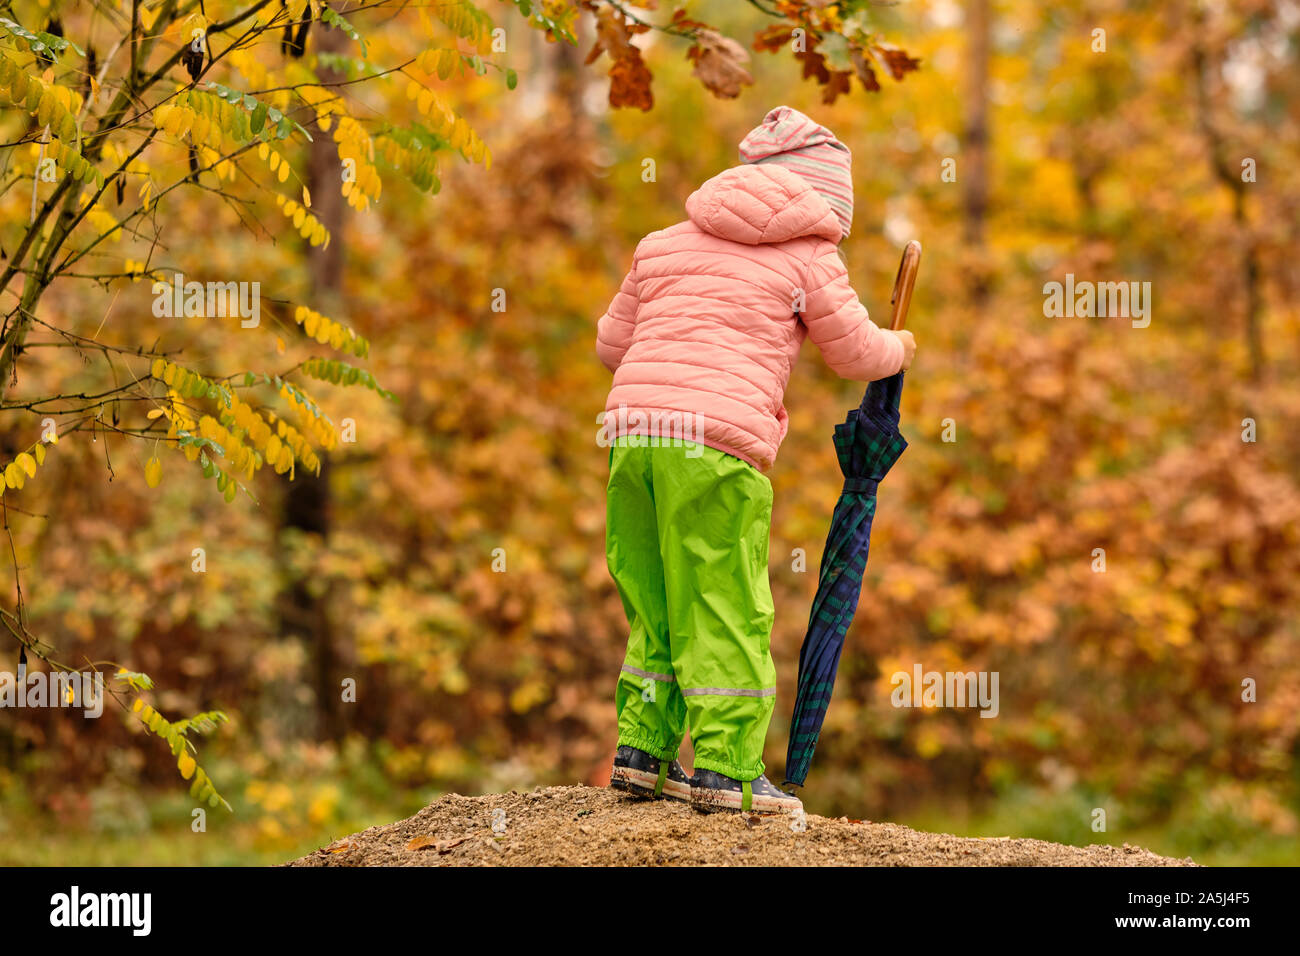 Vista trasera de un niño niña en ropa de abrigo, pantalones y botas de lluvia rubbert sosteniendo un paraguas en un día lluvioso en frente de un hermoso bosque en otoño o Foto de stock